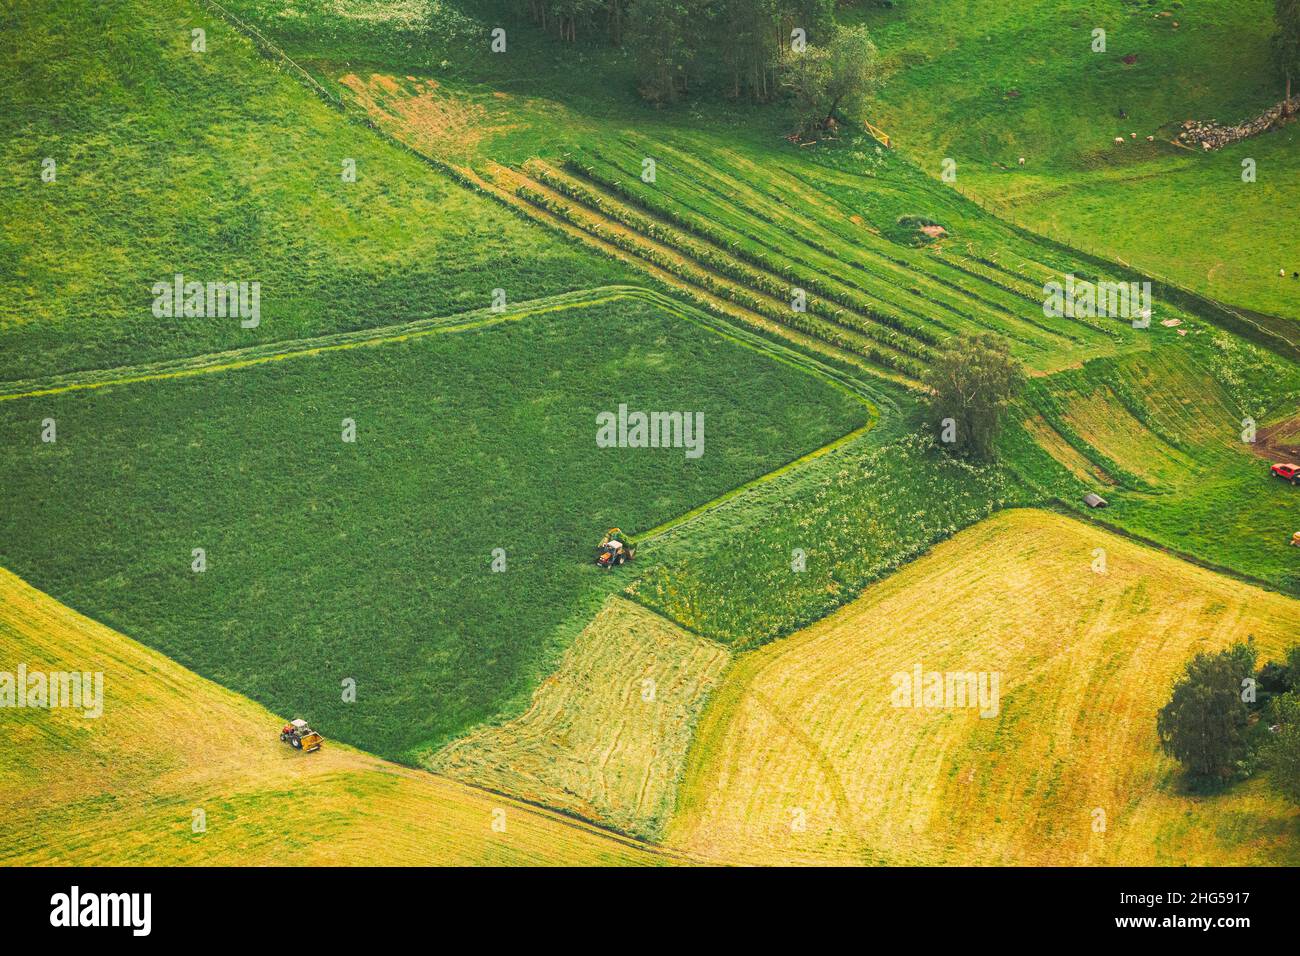 Norvège.Superbe vue aérienne pittoresque d'été des champs norvégiens avec des tracteurs en campagne d'été paysages ruraux Banque D'Images